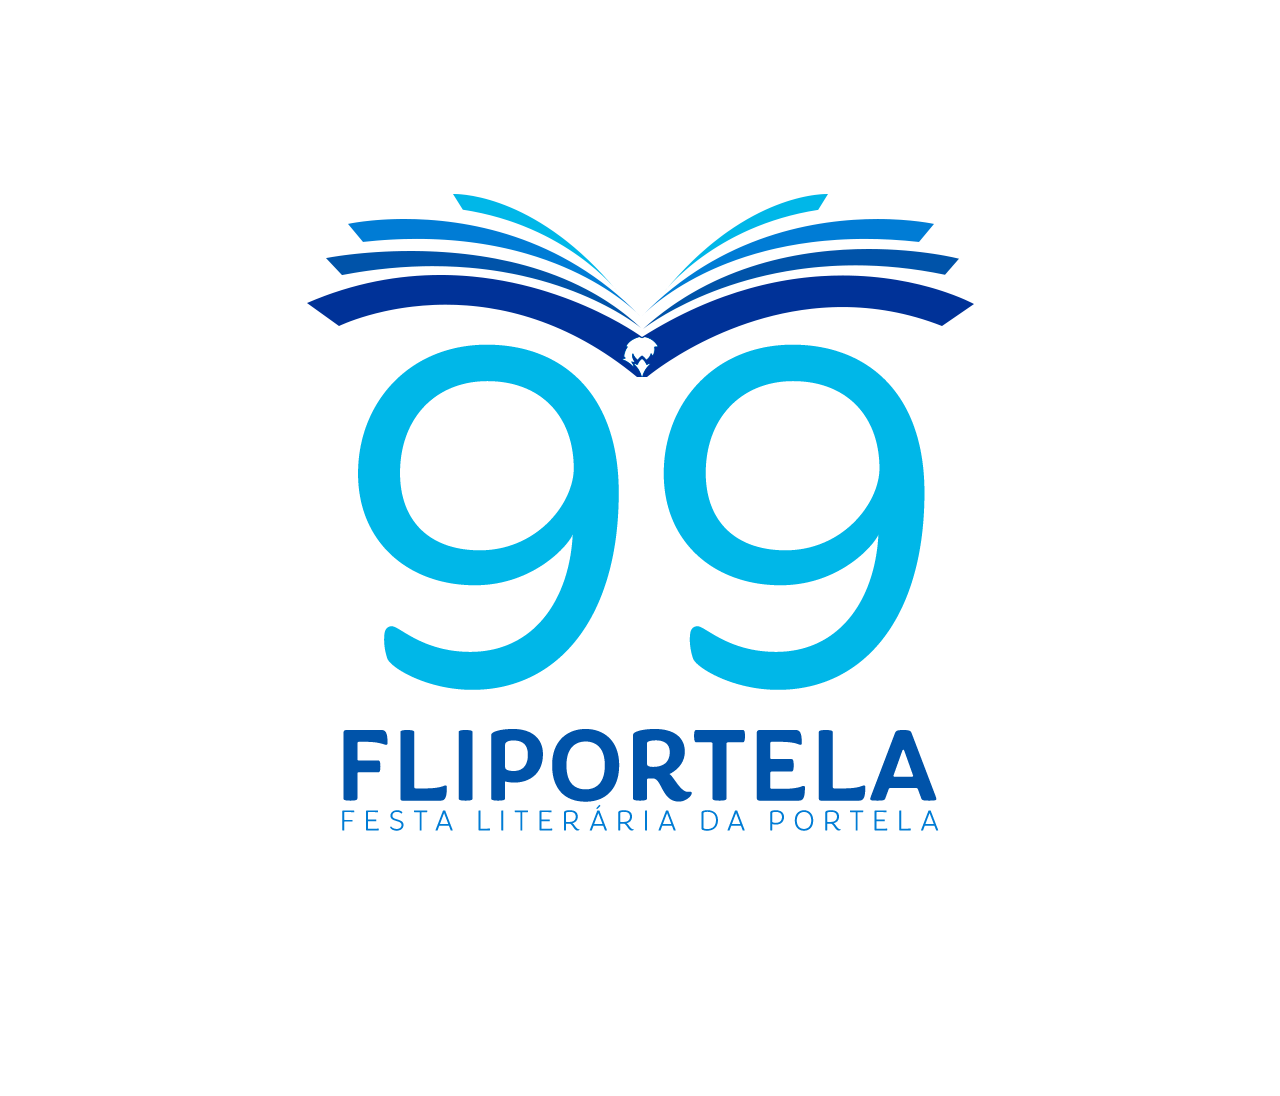 Logotipo da Fliportela 2022, uma águia estilizada com as asas feitas de livros em vários tons de azul sobrevoando o número 99 e o dizer Fliportela